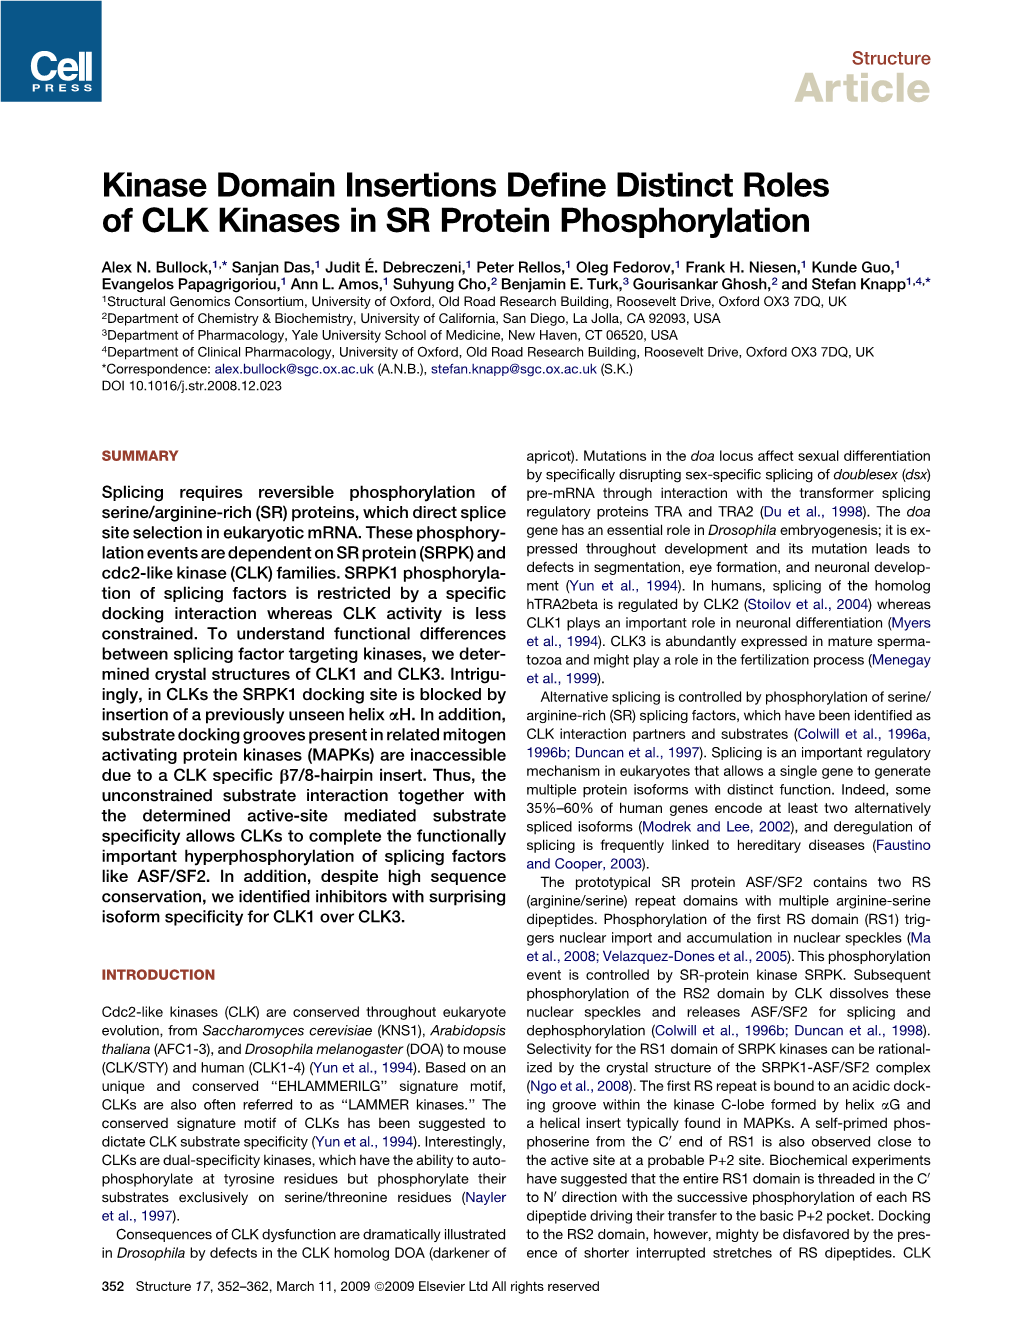 Kinase Domain Insertions Define Distinct Roles of CLK Kinases in SR